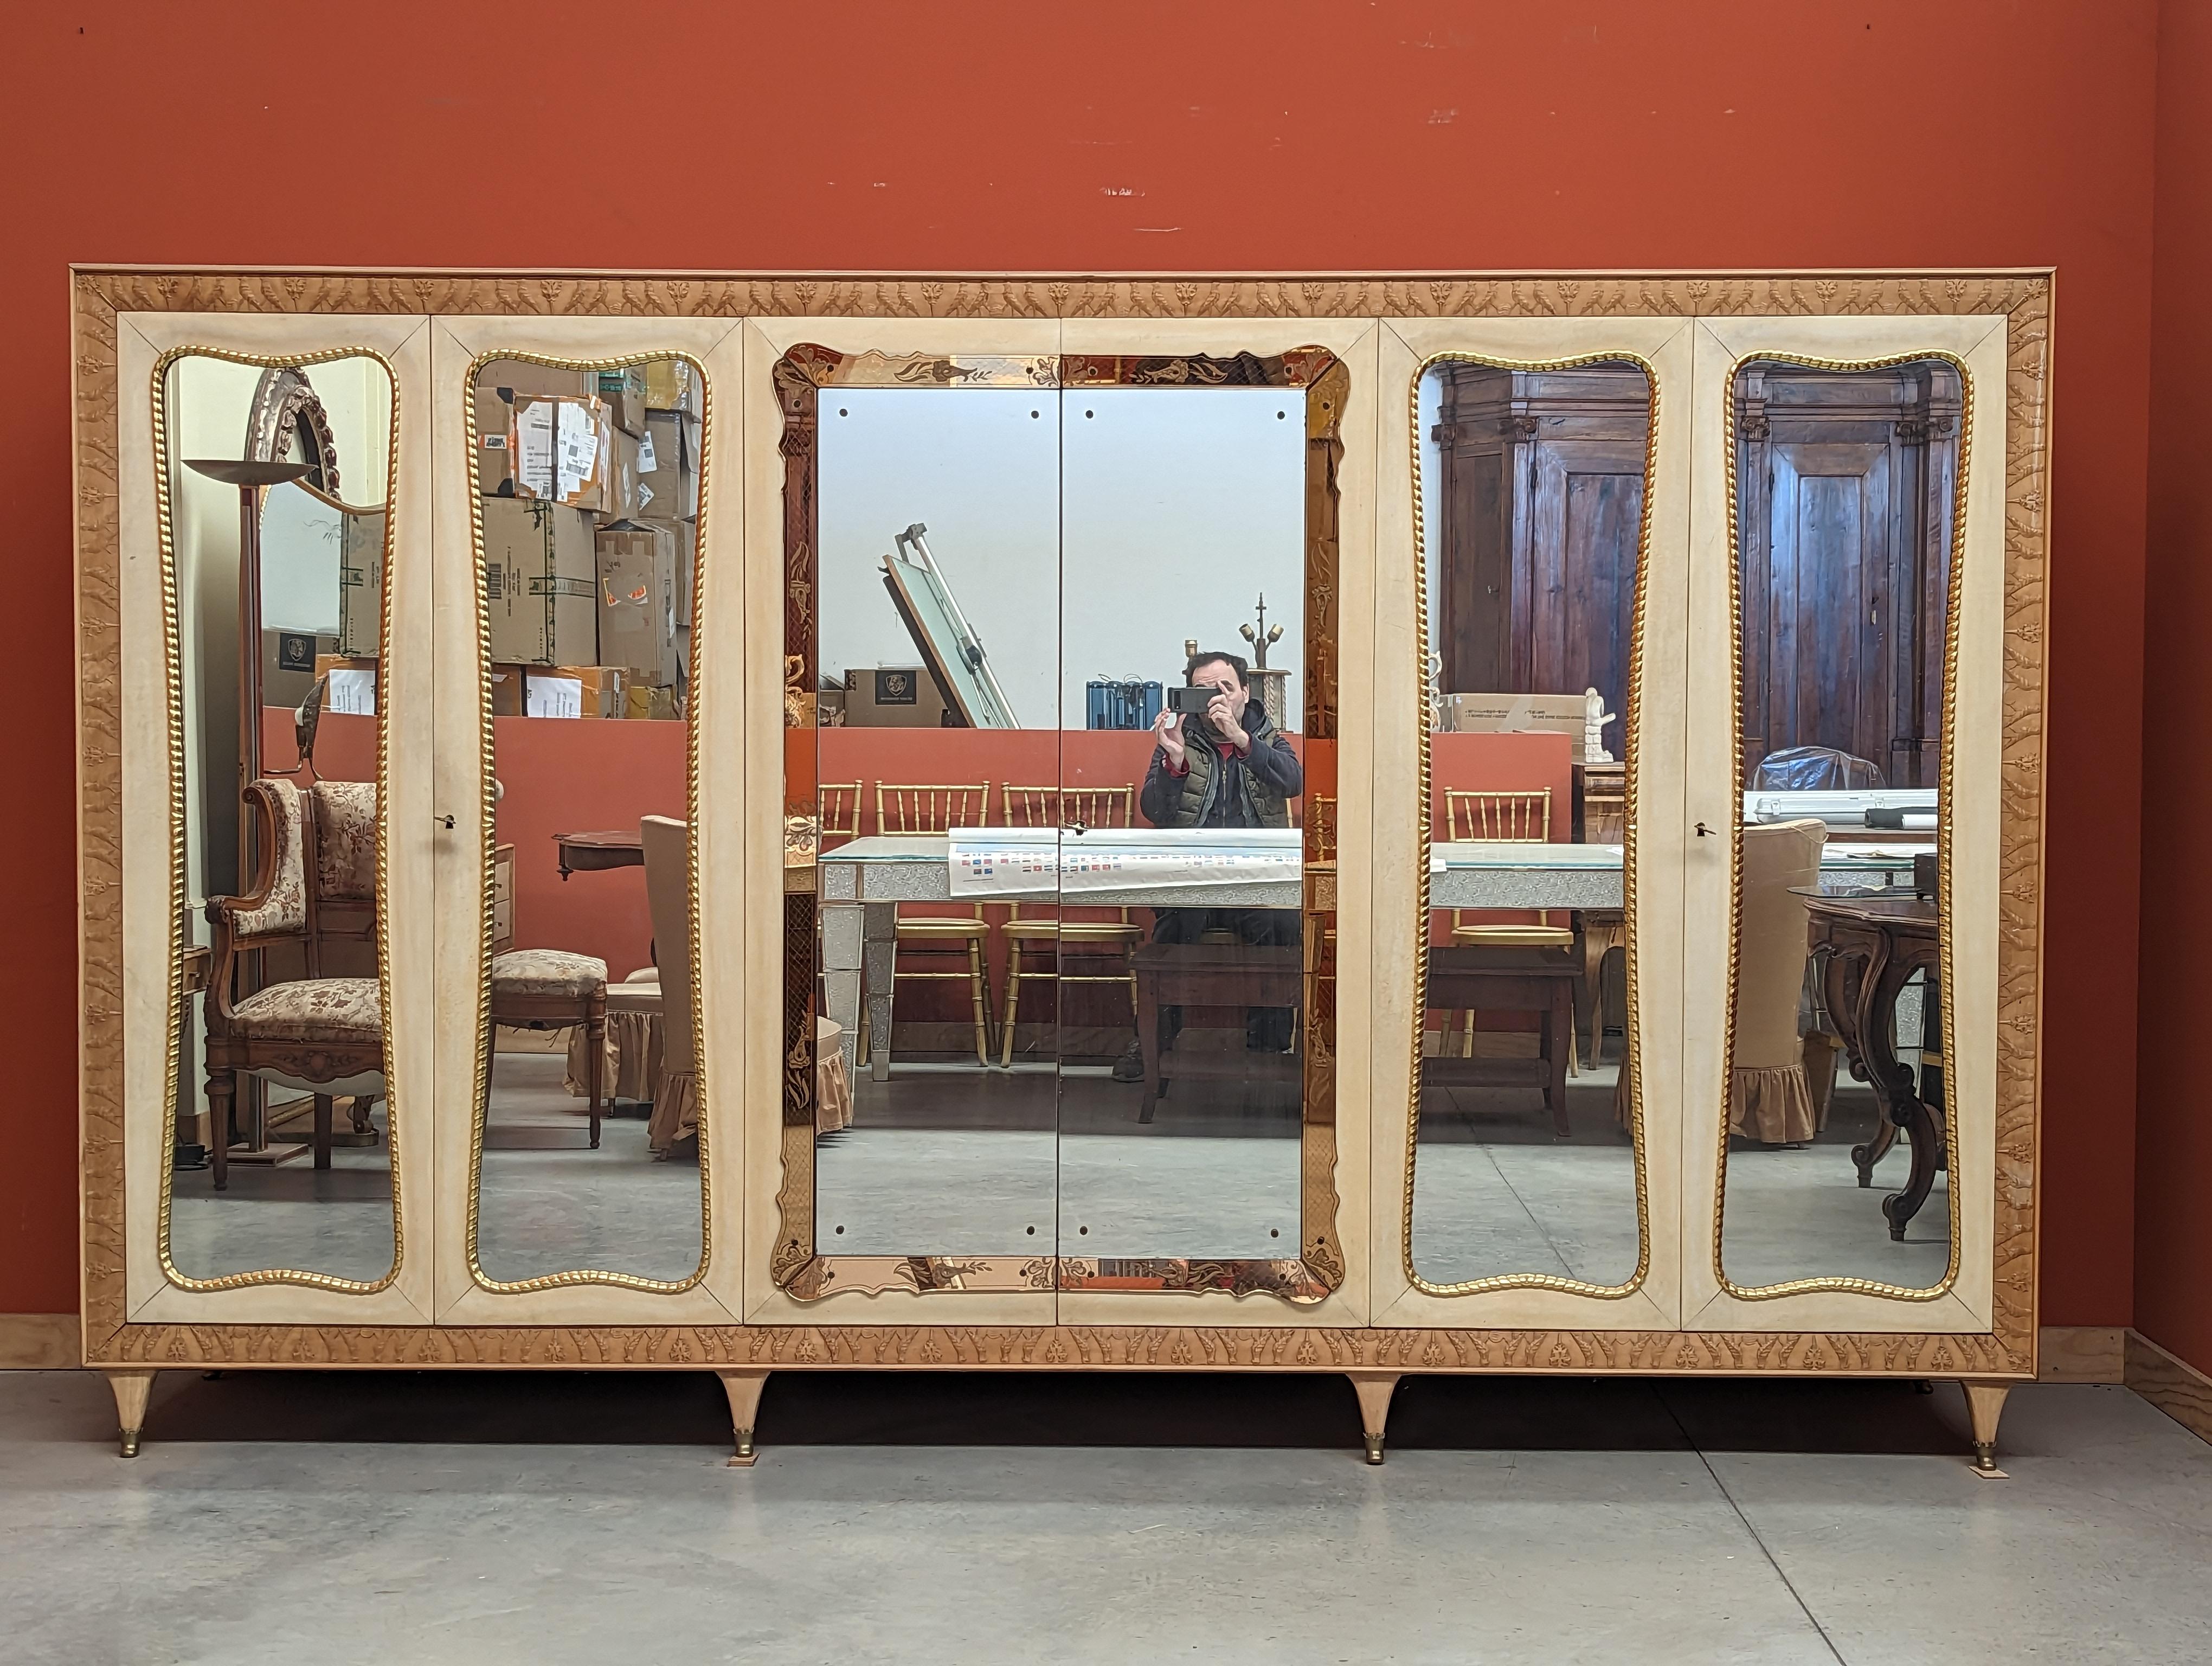 Il s'agit d'une splendide armoire conçue par Pierluigi Colli et fabriquée à Turin dans la première moitié des années 1900. L'attention portée aux détails est remarquable, avec une pléthore de caractéristiques exquises qui l'élèvent au rang de